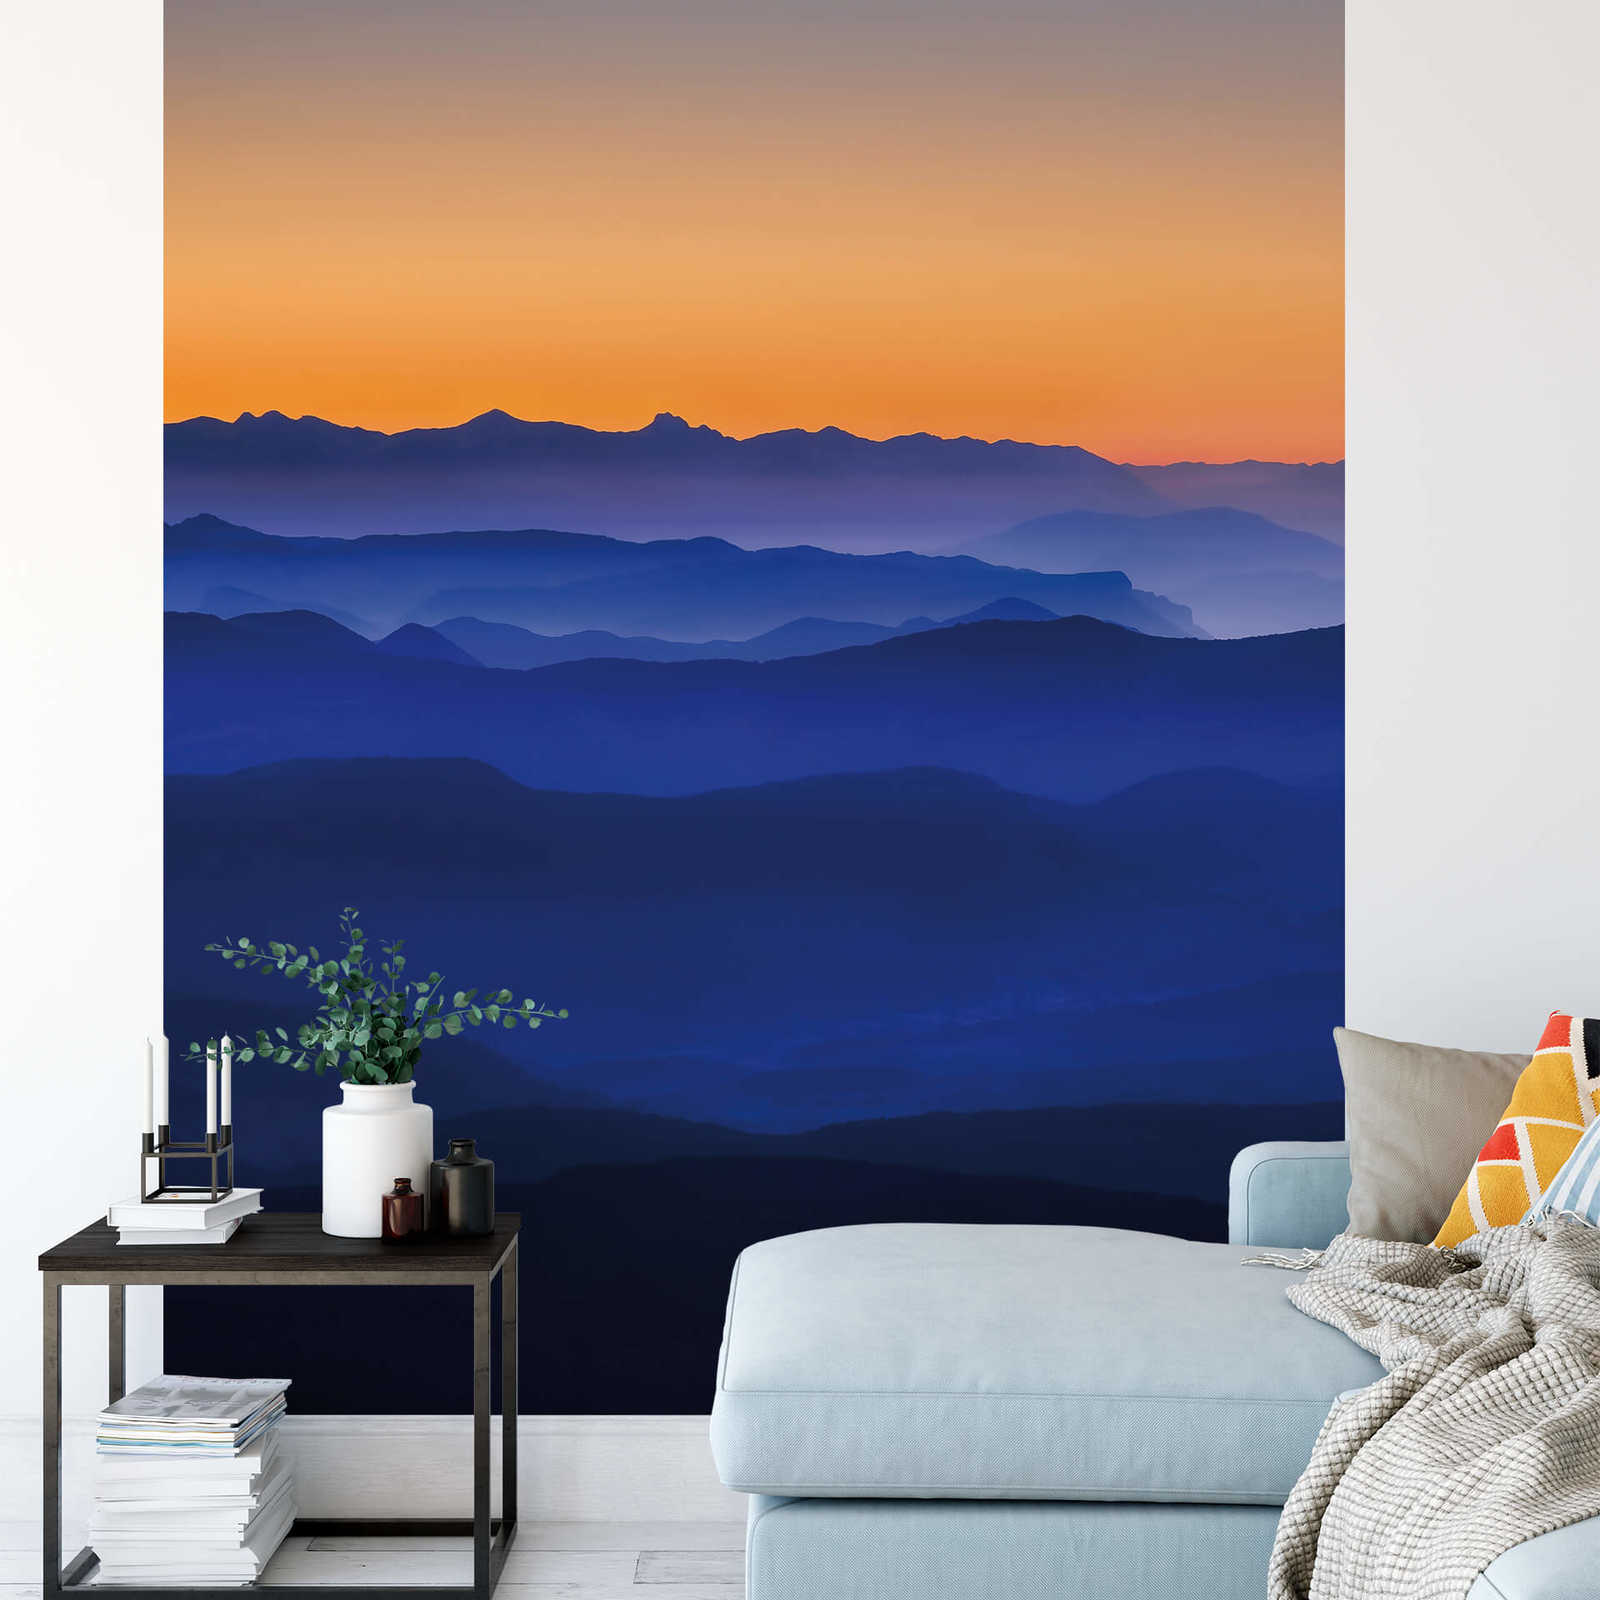             Papier peint montagne au crépuscule - bleu, orange, jaune
        